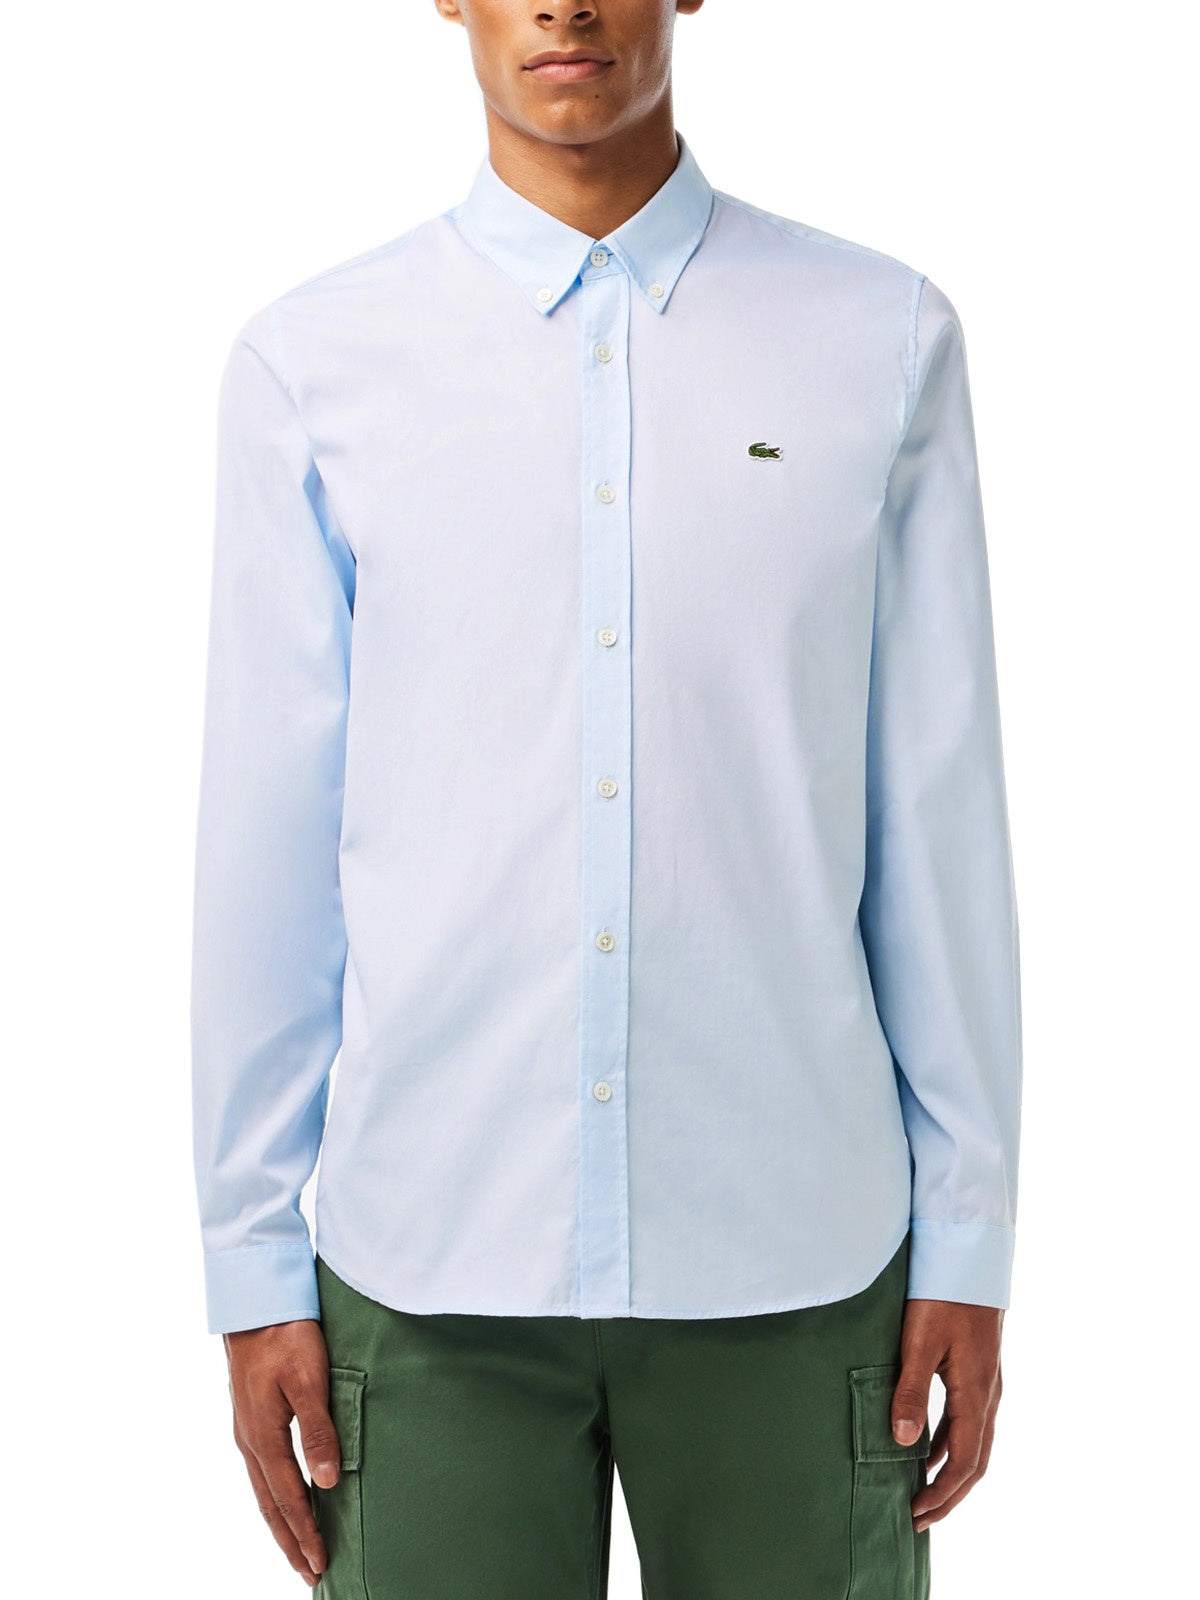 Camicie casual Uomo Lacoste - Camicia In Cotone Di Alta Qualità Slim Fit - Celeste